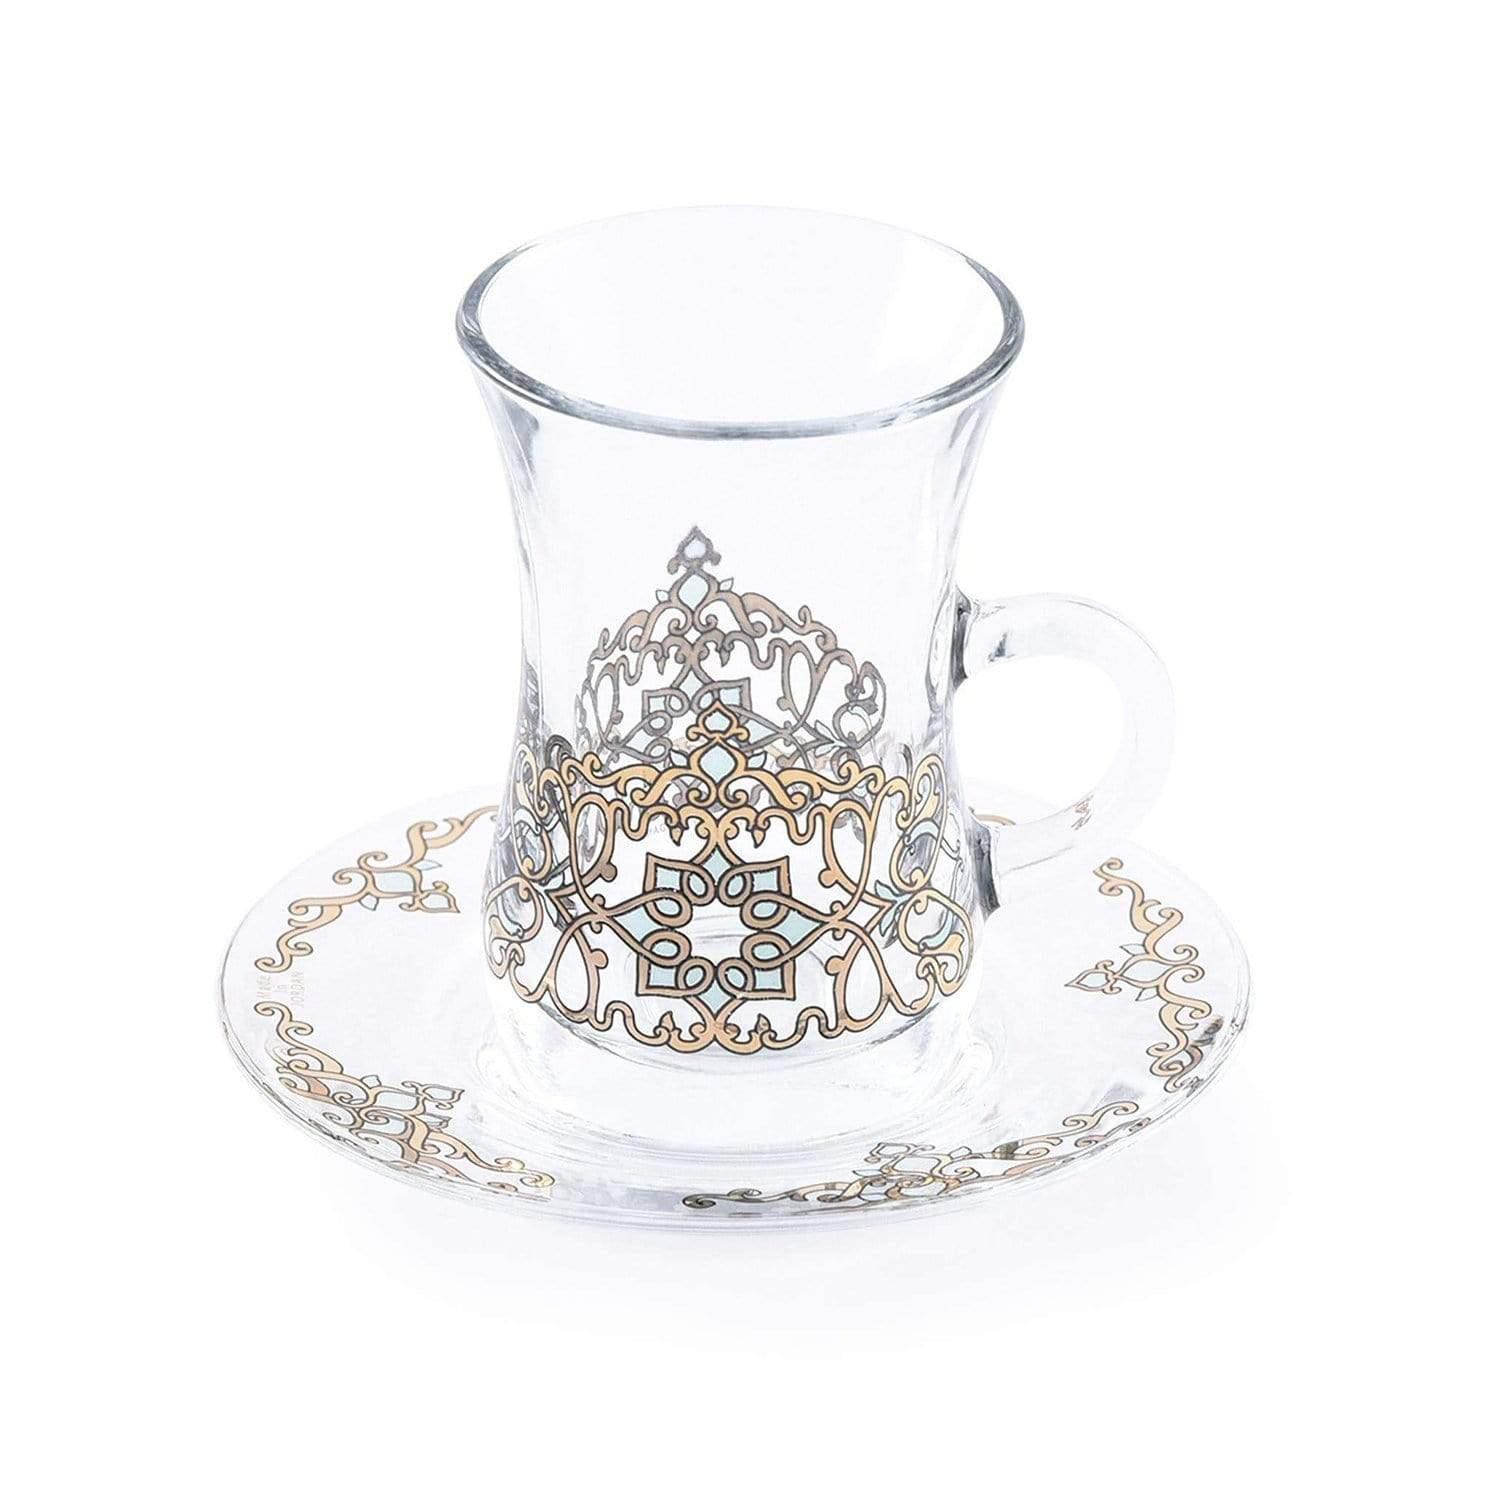 Dimlaj Regal Tea Glass and Saucer - Gold and Green, Set of 12 - 20805